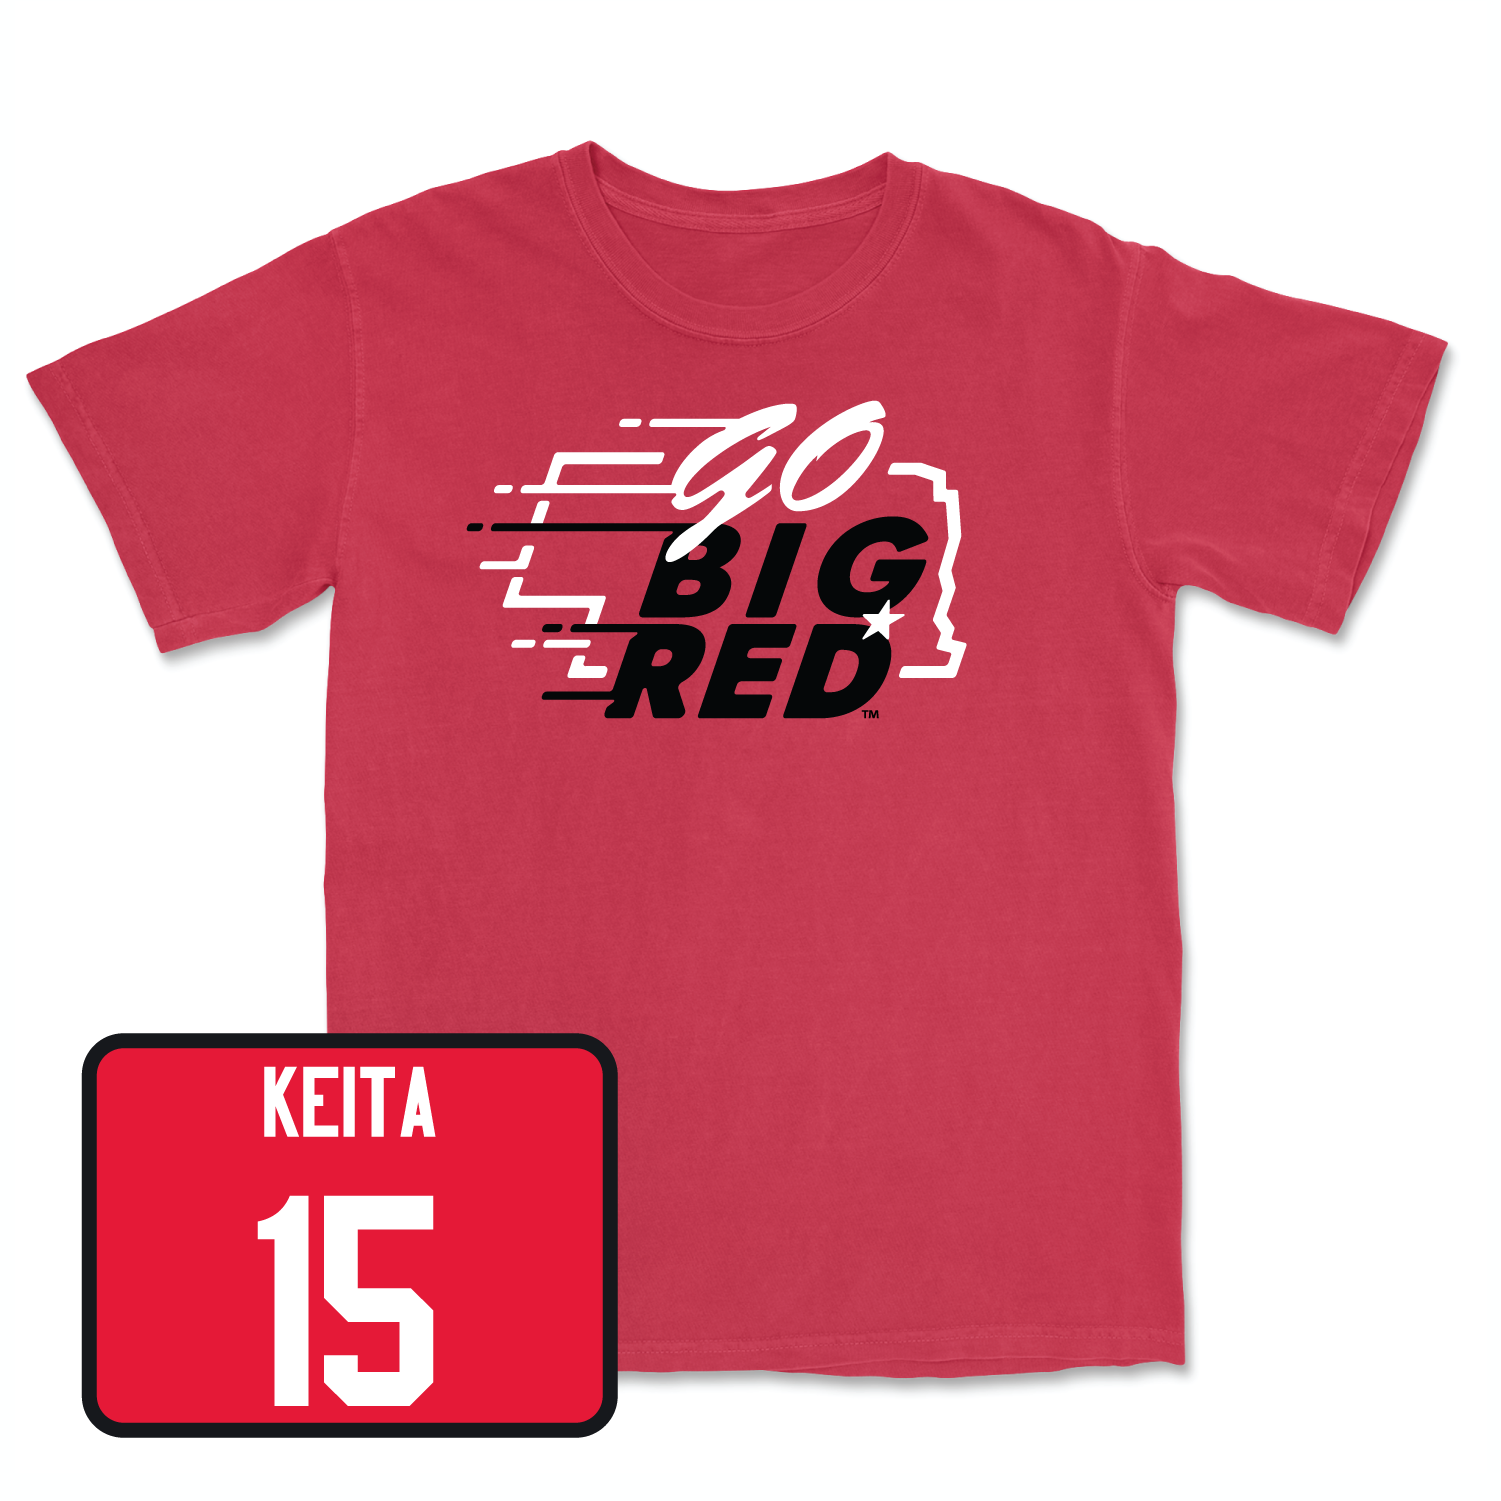 Red Men's Basketball GBR Tee Large / Blaise Keita | #15